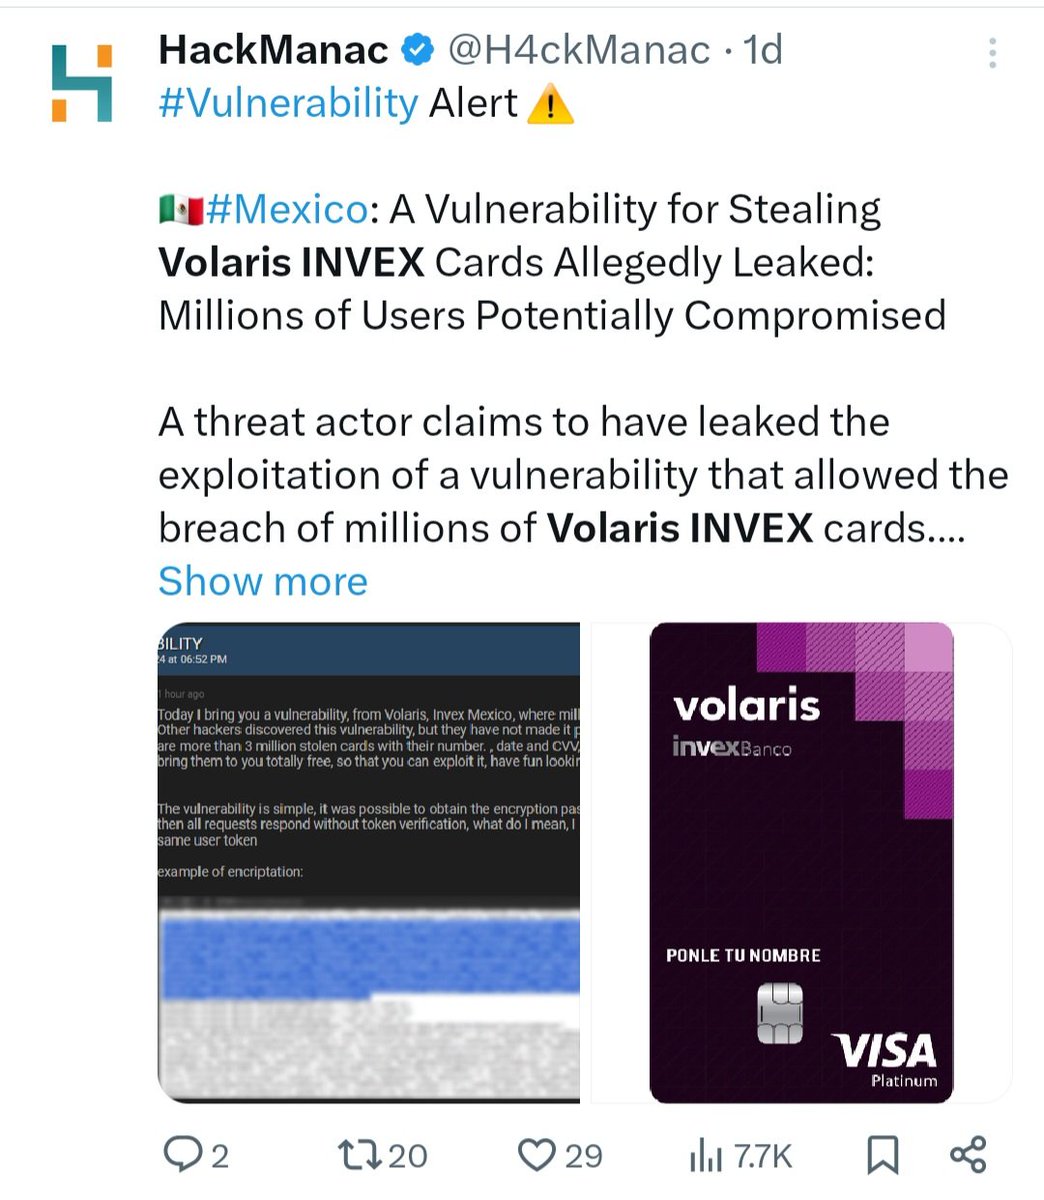 📍 Me llamaron de Invex para decirme que son falsos los rumores de que hackearon a tarjehabientes de Invex Volaris. Así que esto que circula por ahí 👇 es falso. También me dijeron que hubo un incidente pero que no más de 500 clientes cayeron en la trampa de los delincuentes. 🇲🇽